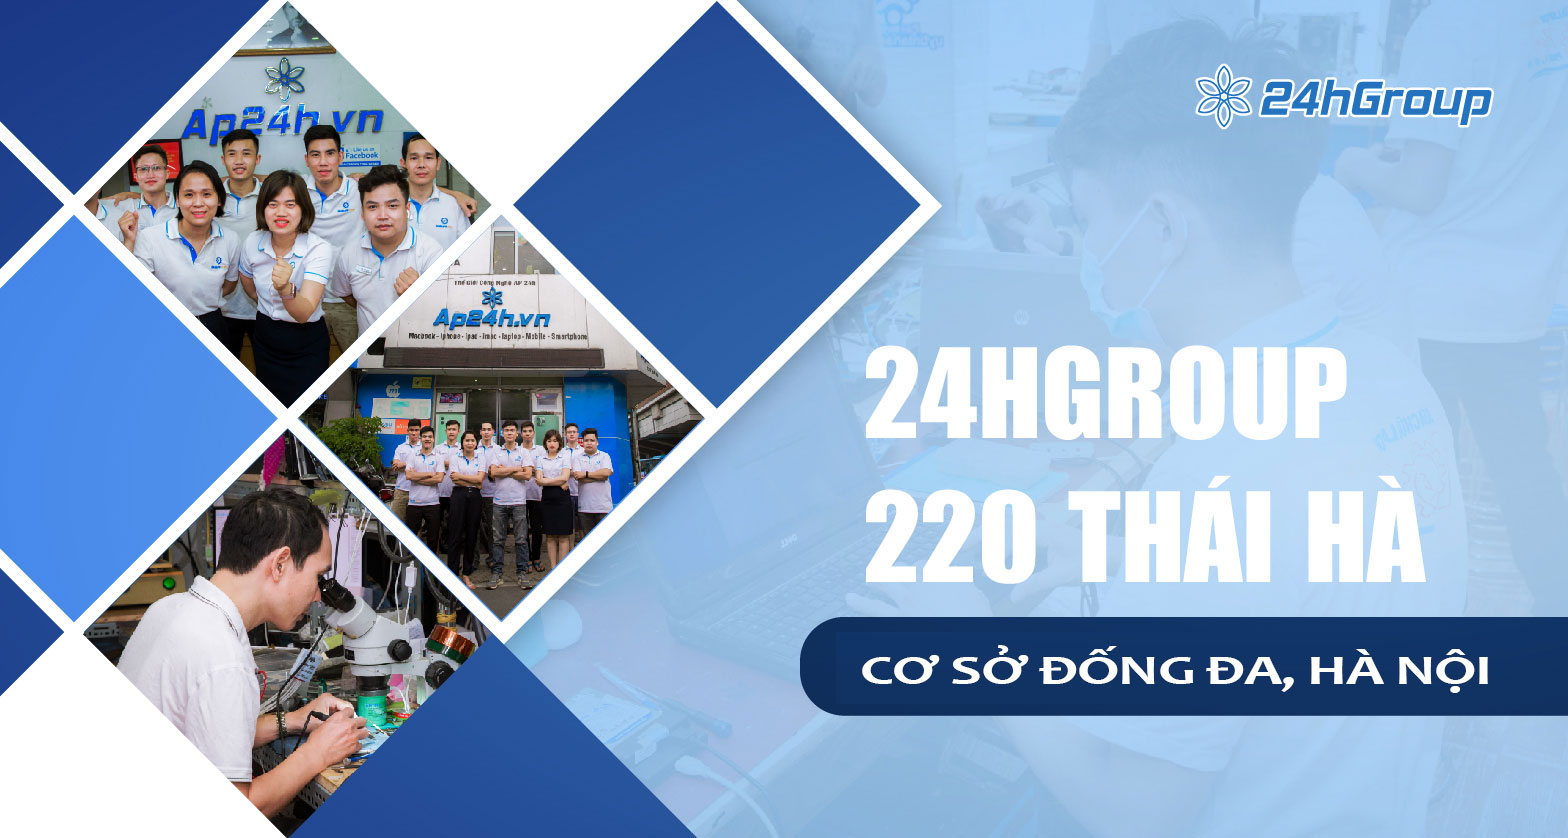 Giới thiệu cơ sở 24hGroup số 220 Thái Hà, Đống Đa, Hà Nội